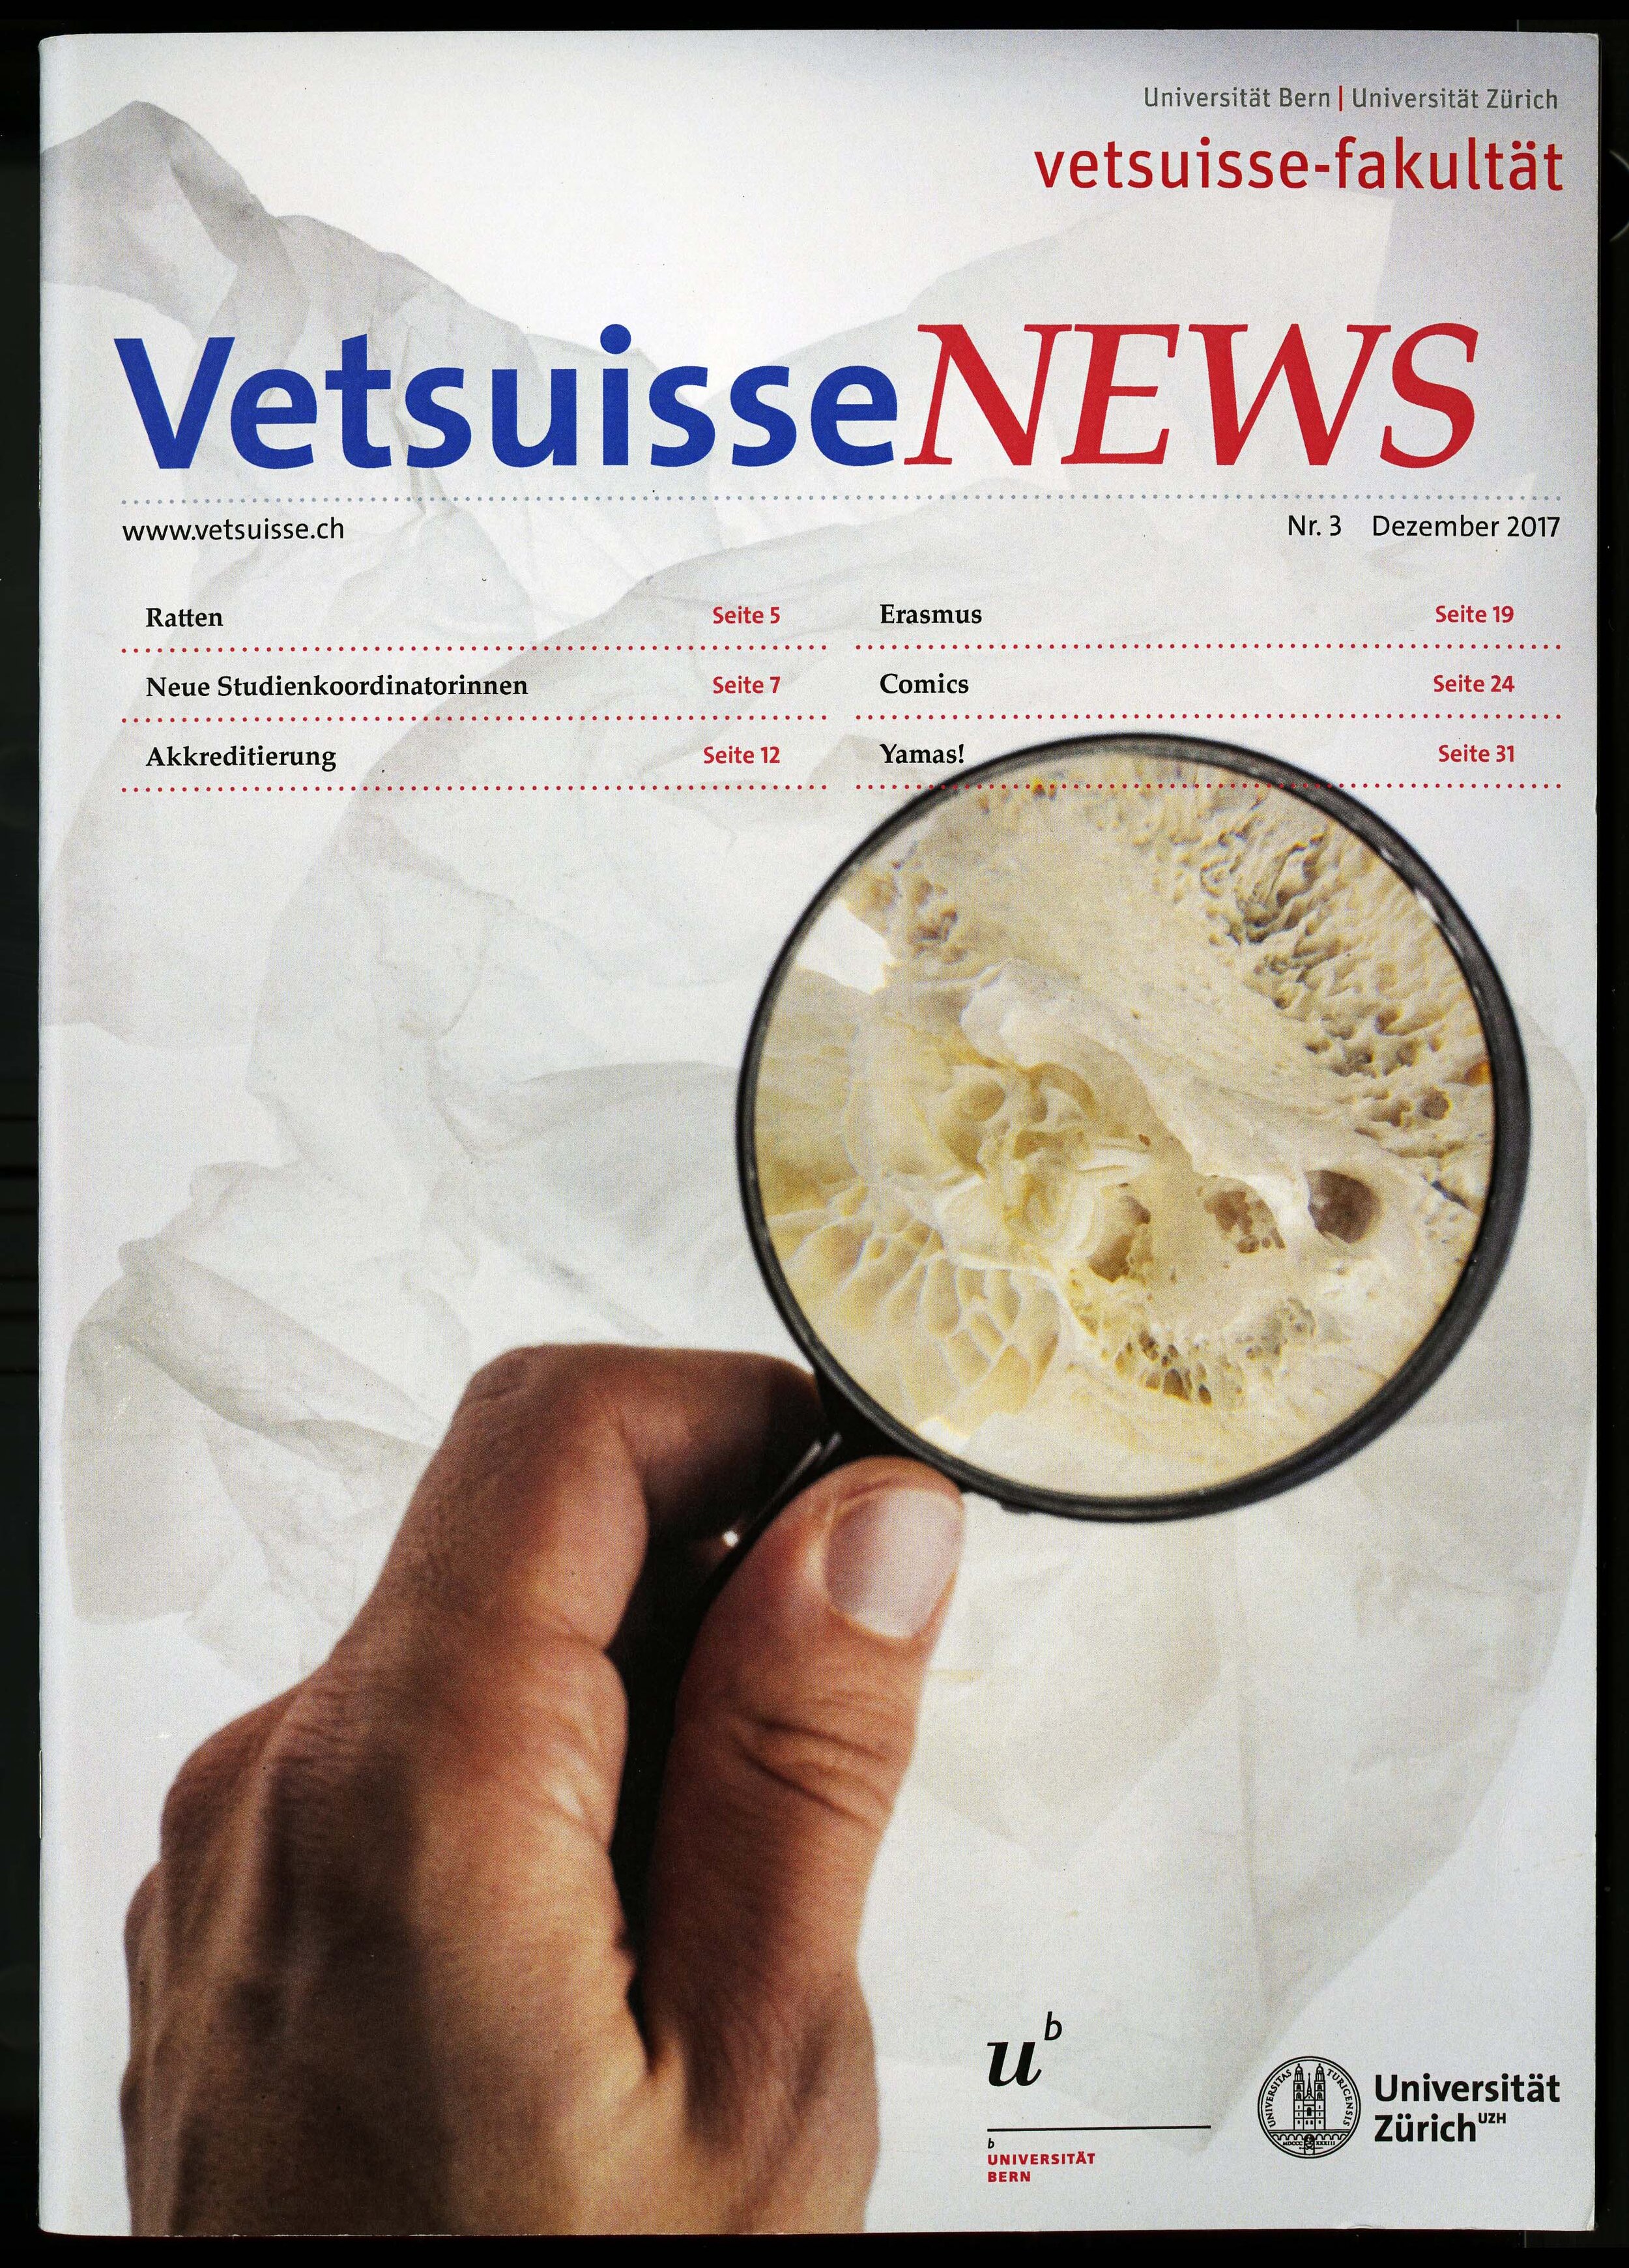 vetsussenews cover003.jpg